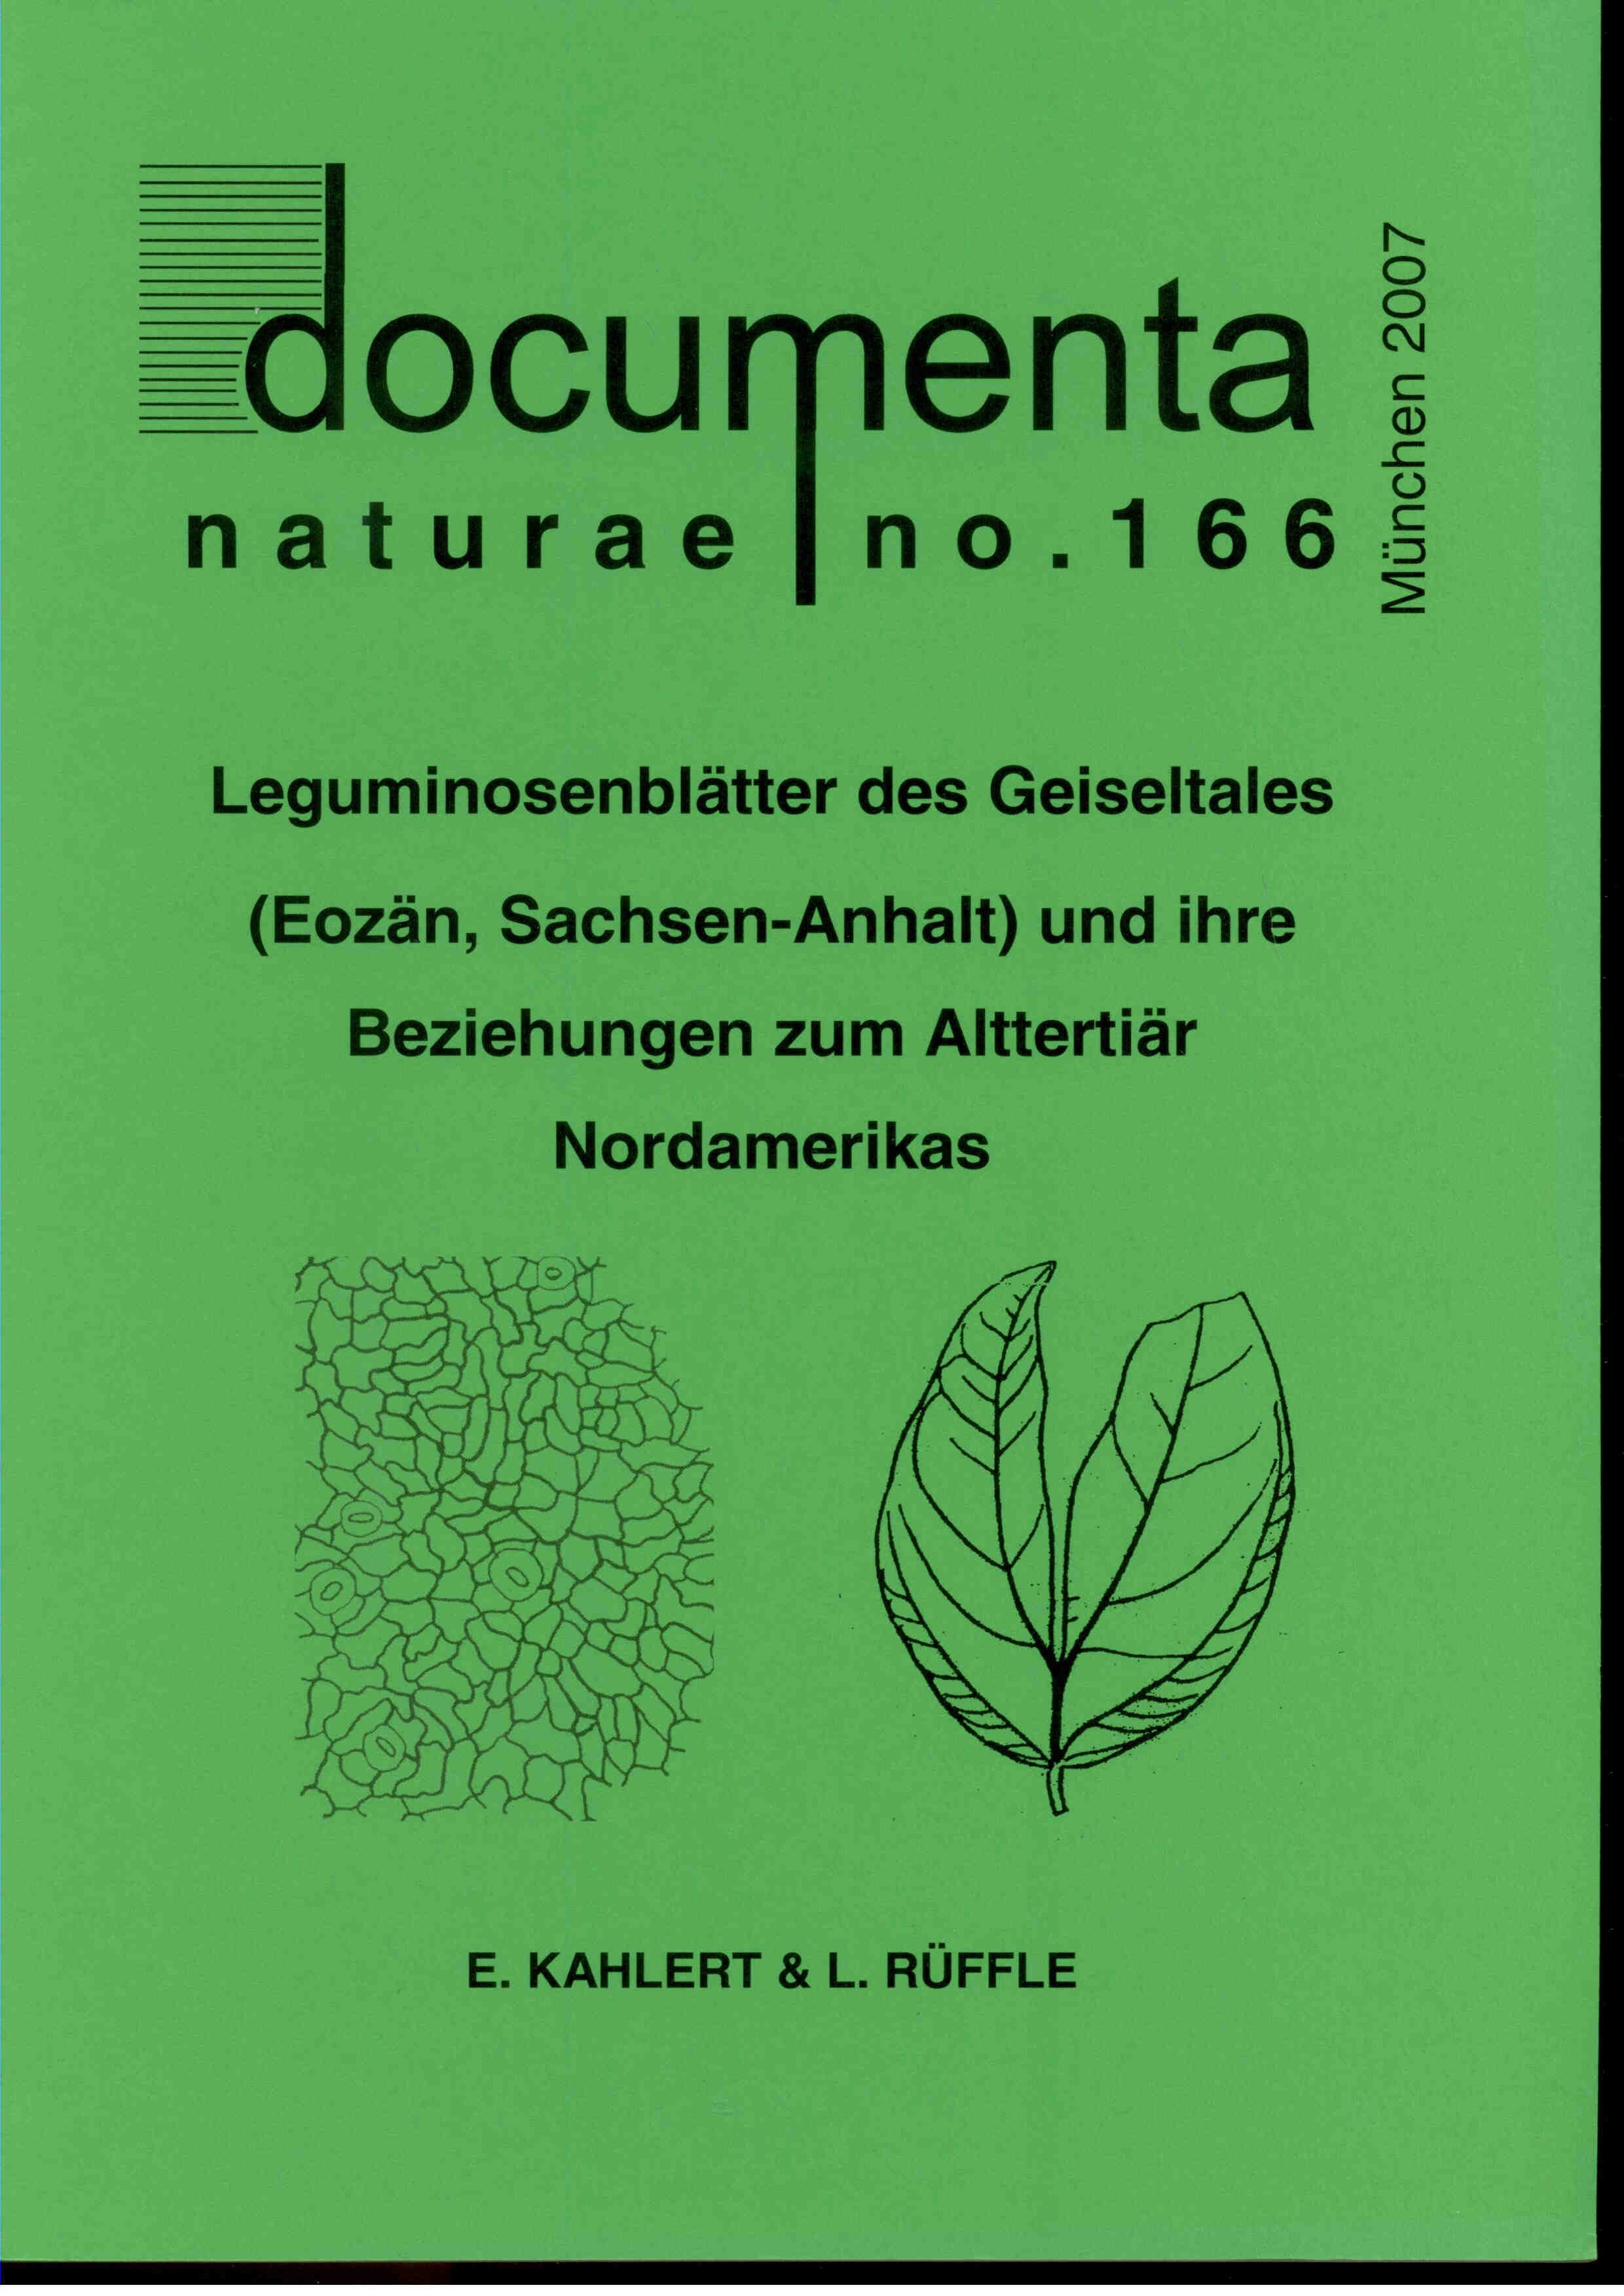 documenta naturae no. 166